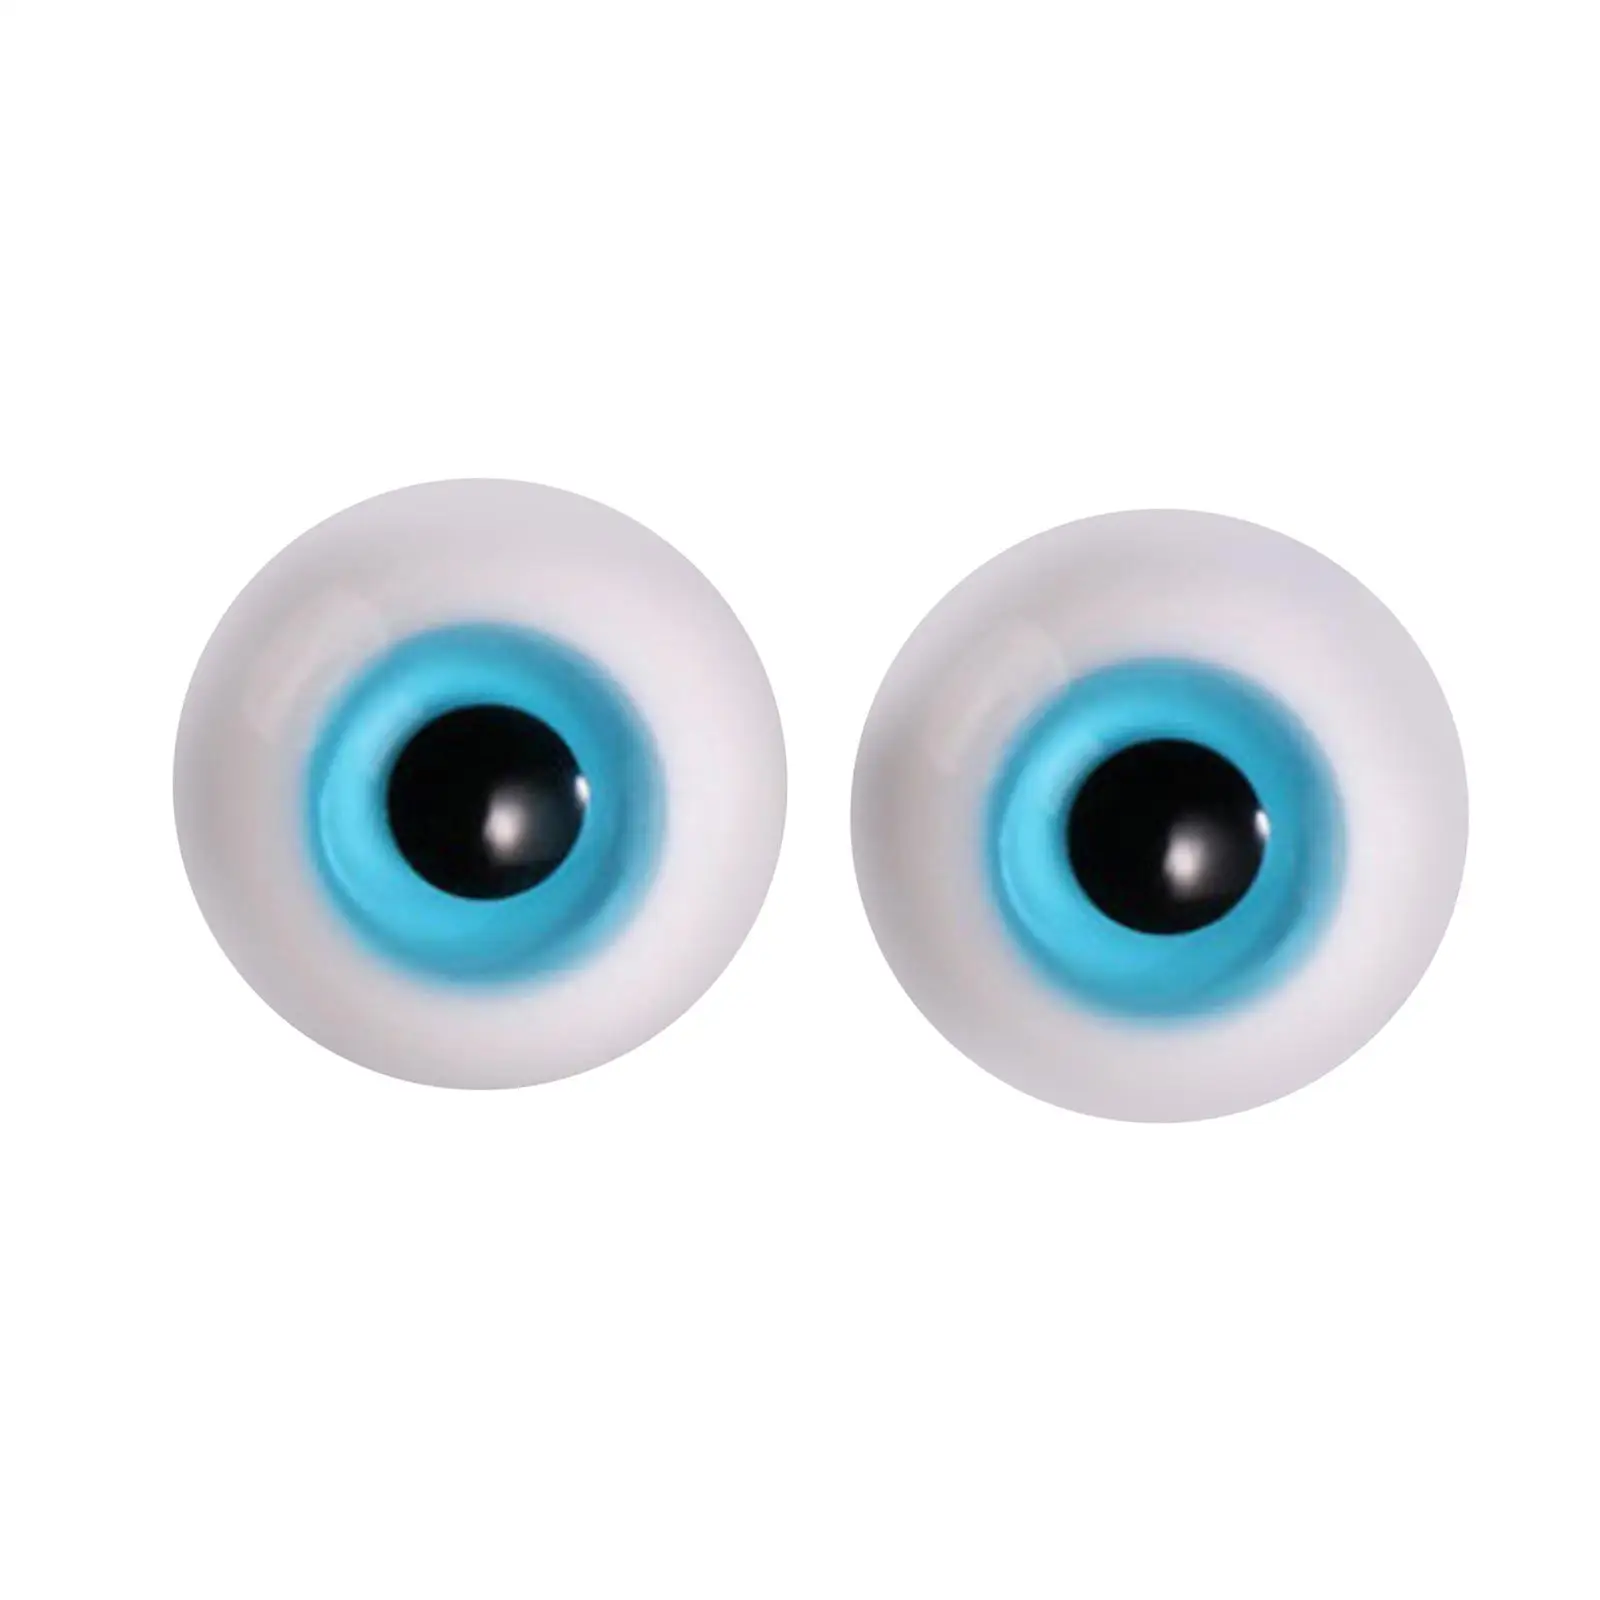 2шт Большие кукольные глаза, шевелящиеся глаза (6 мм), подвижные художественные поделки, глазное яблоко для изготовления кукол, скульптура, реквизит для Хэллоуина Изображение 1